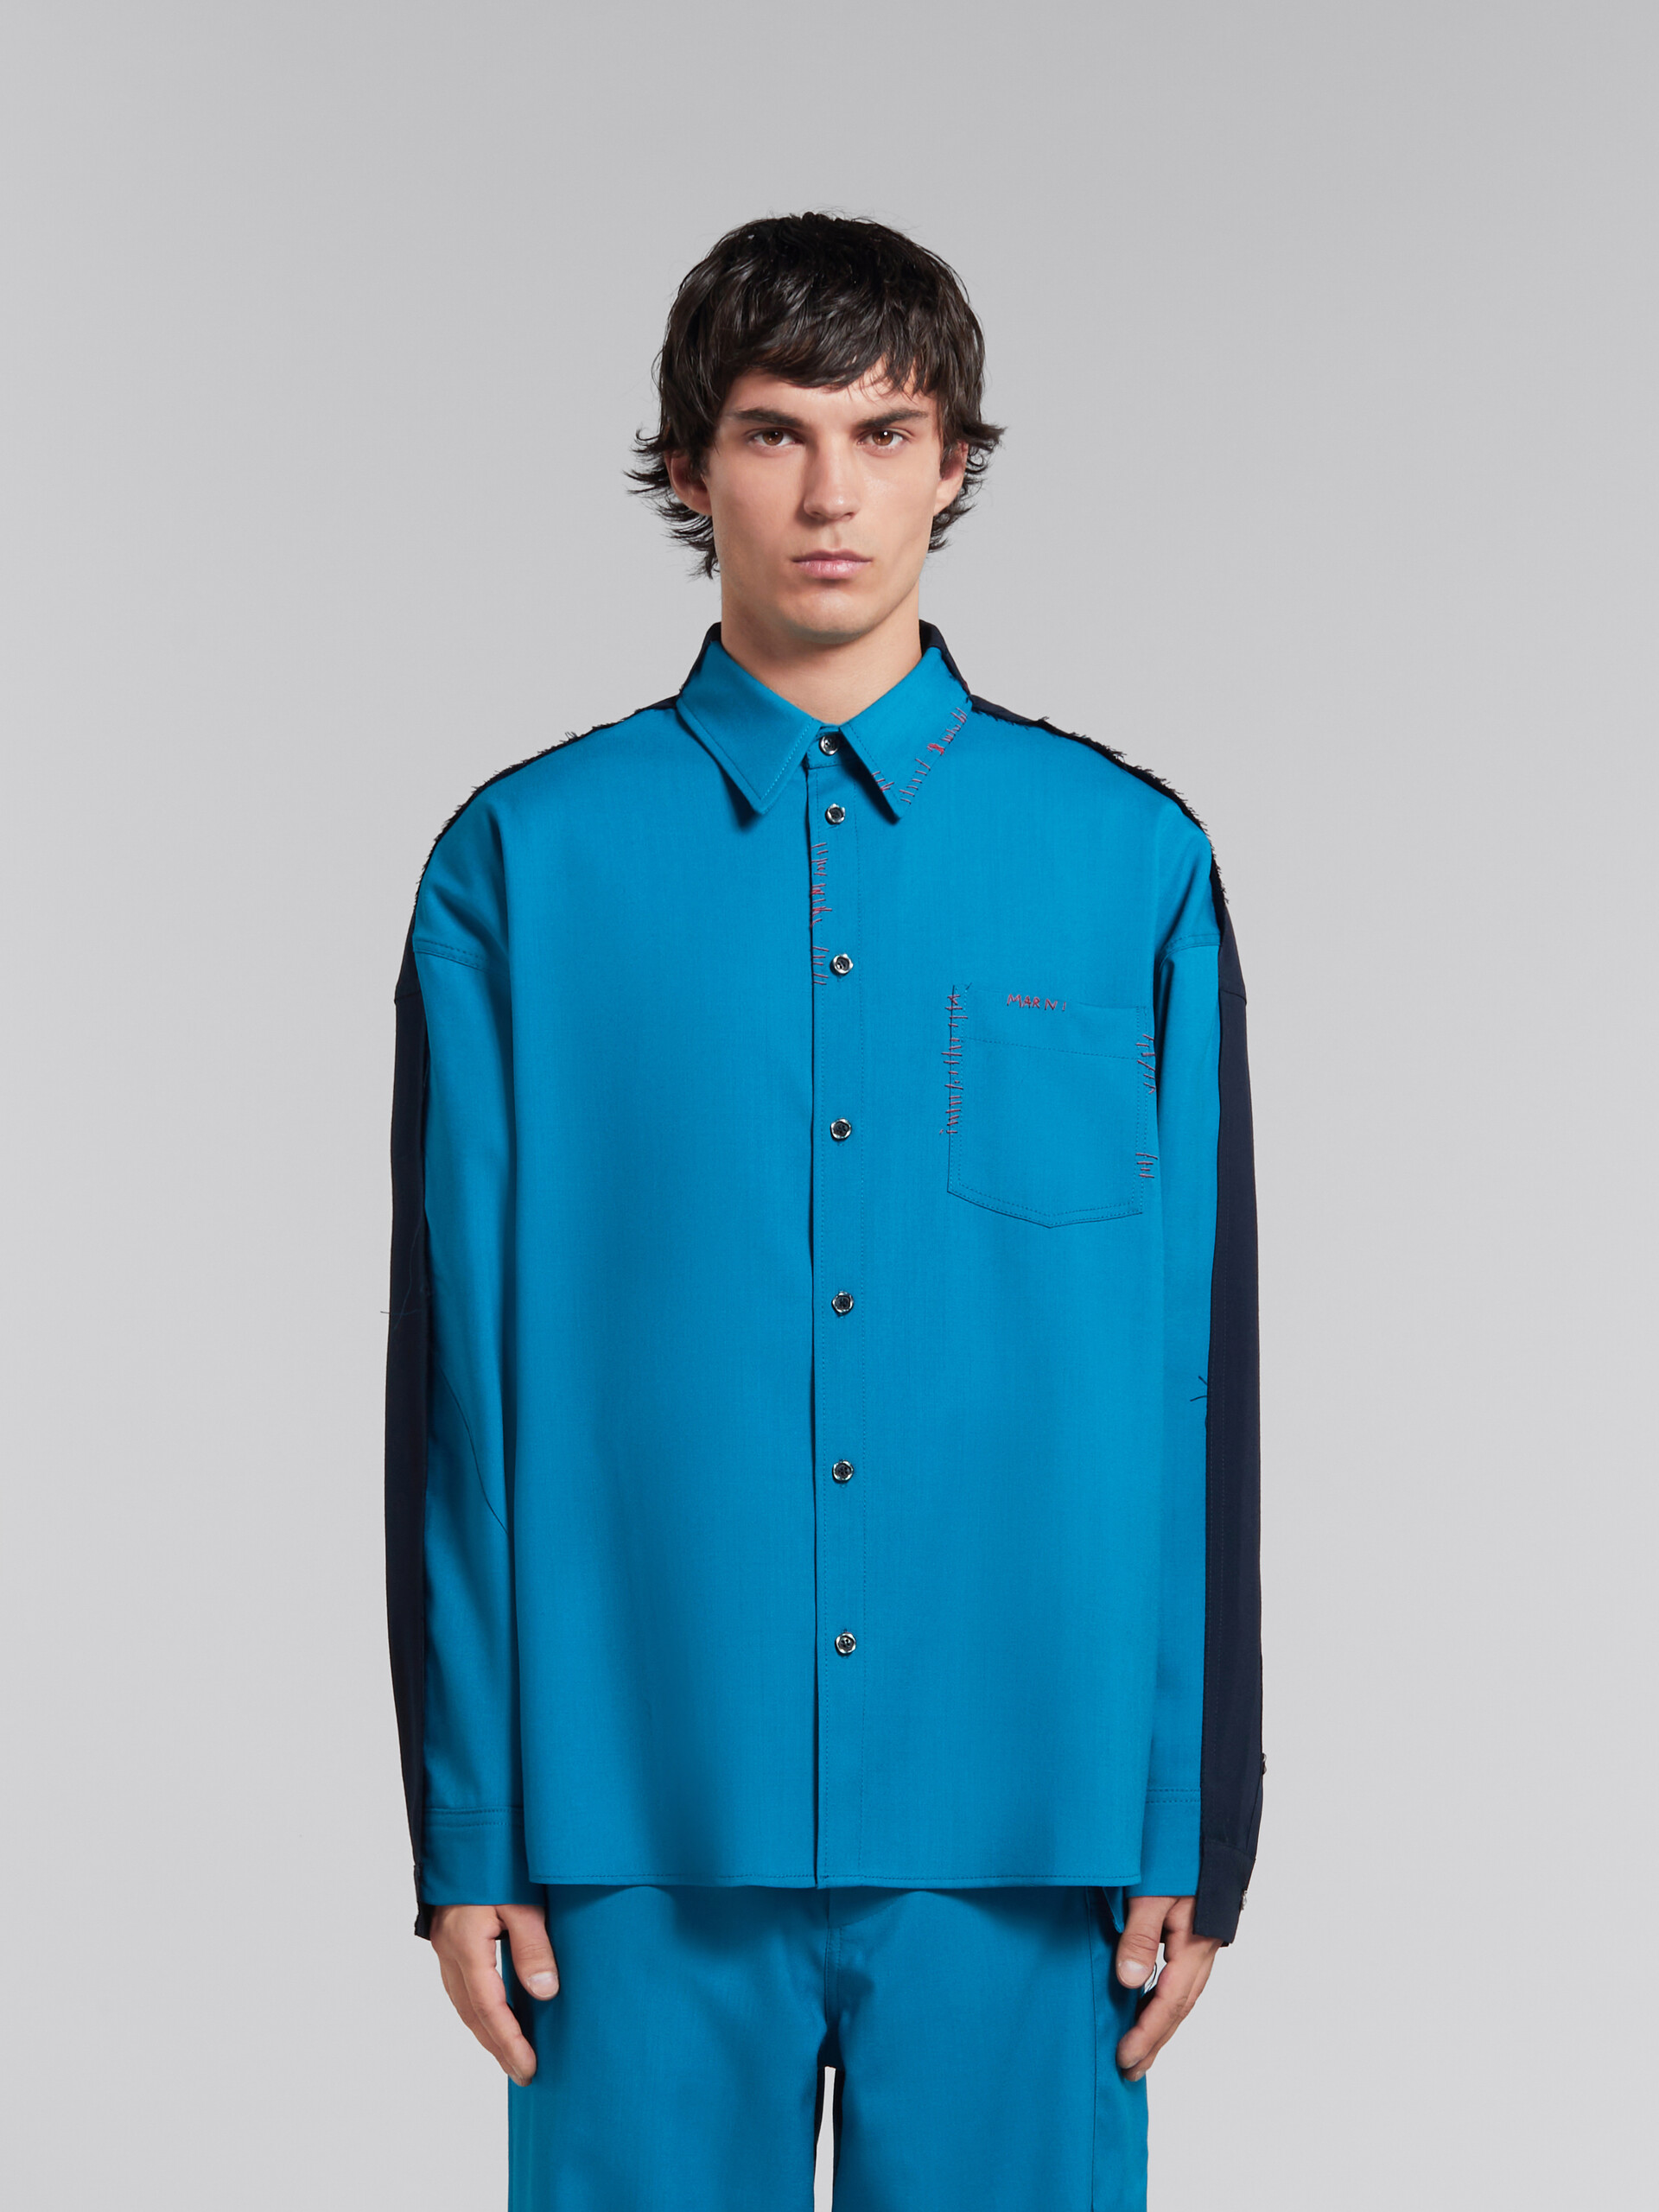 Camisa de lana tropical azul con espalda en contraste - Camisas - Image 2